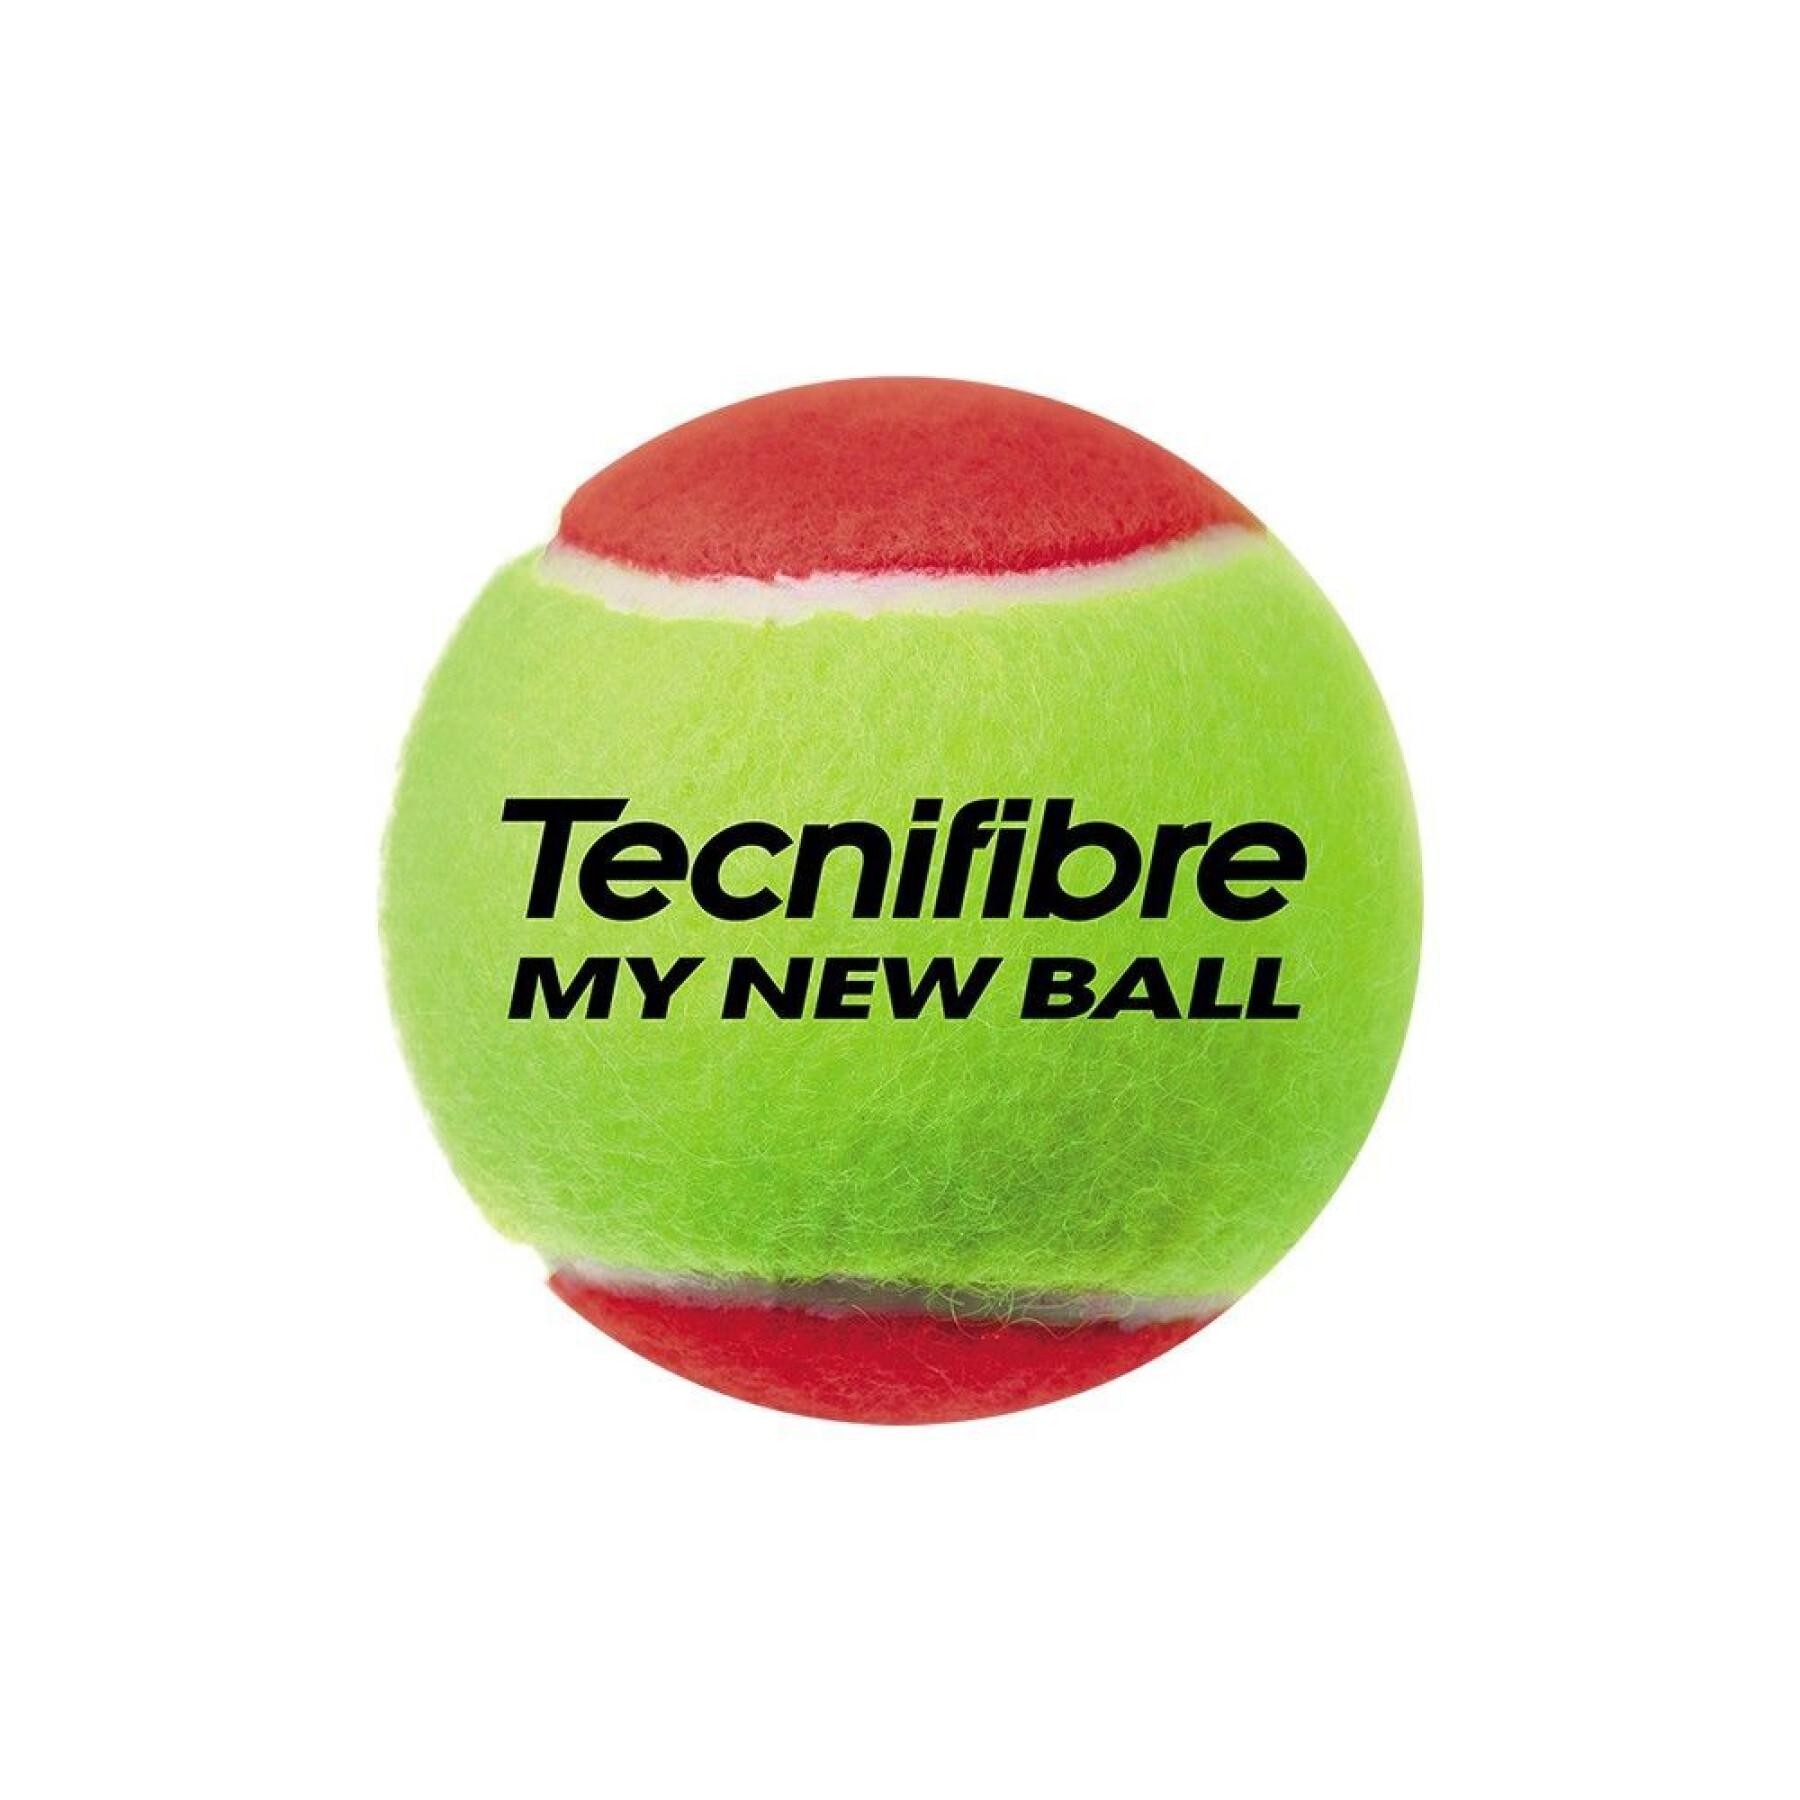 Conjunto de 3 bolas de ténis para crianças Tecnifibre My new ball